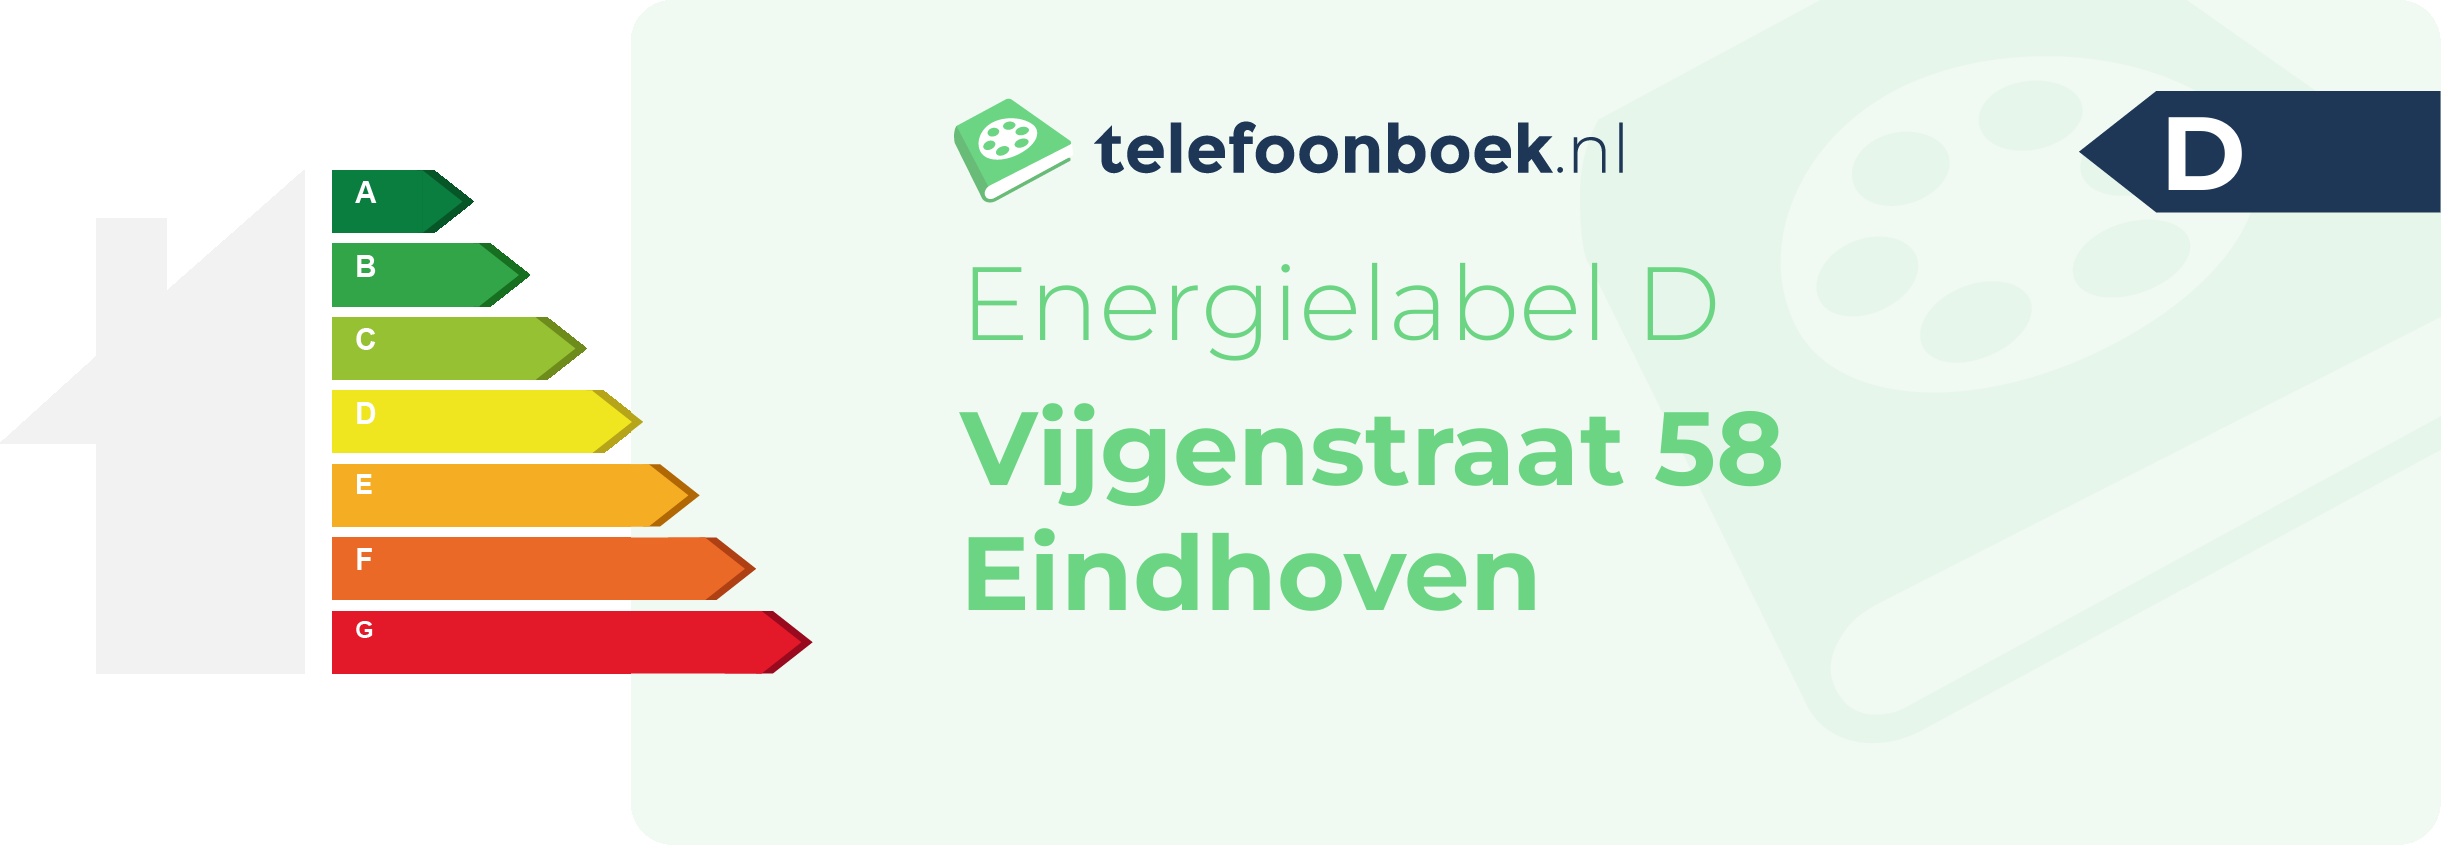 Energielabel Vijgenstraat 58 Eindhoven